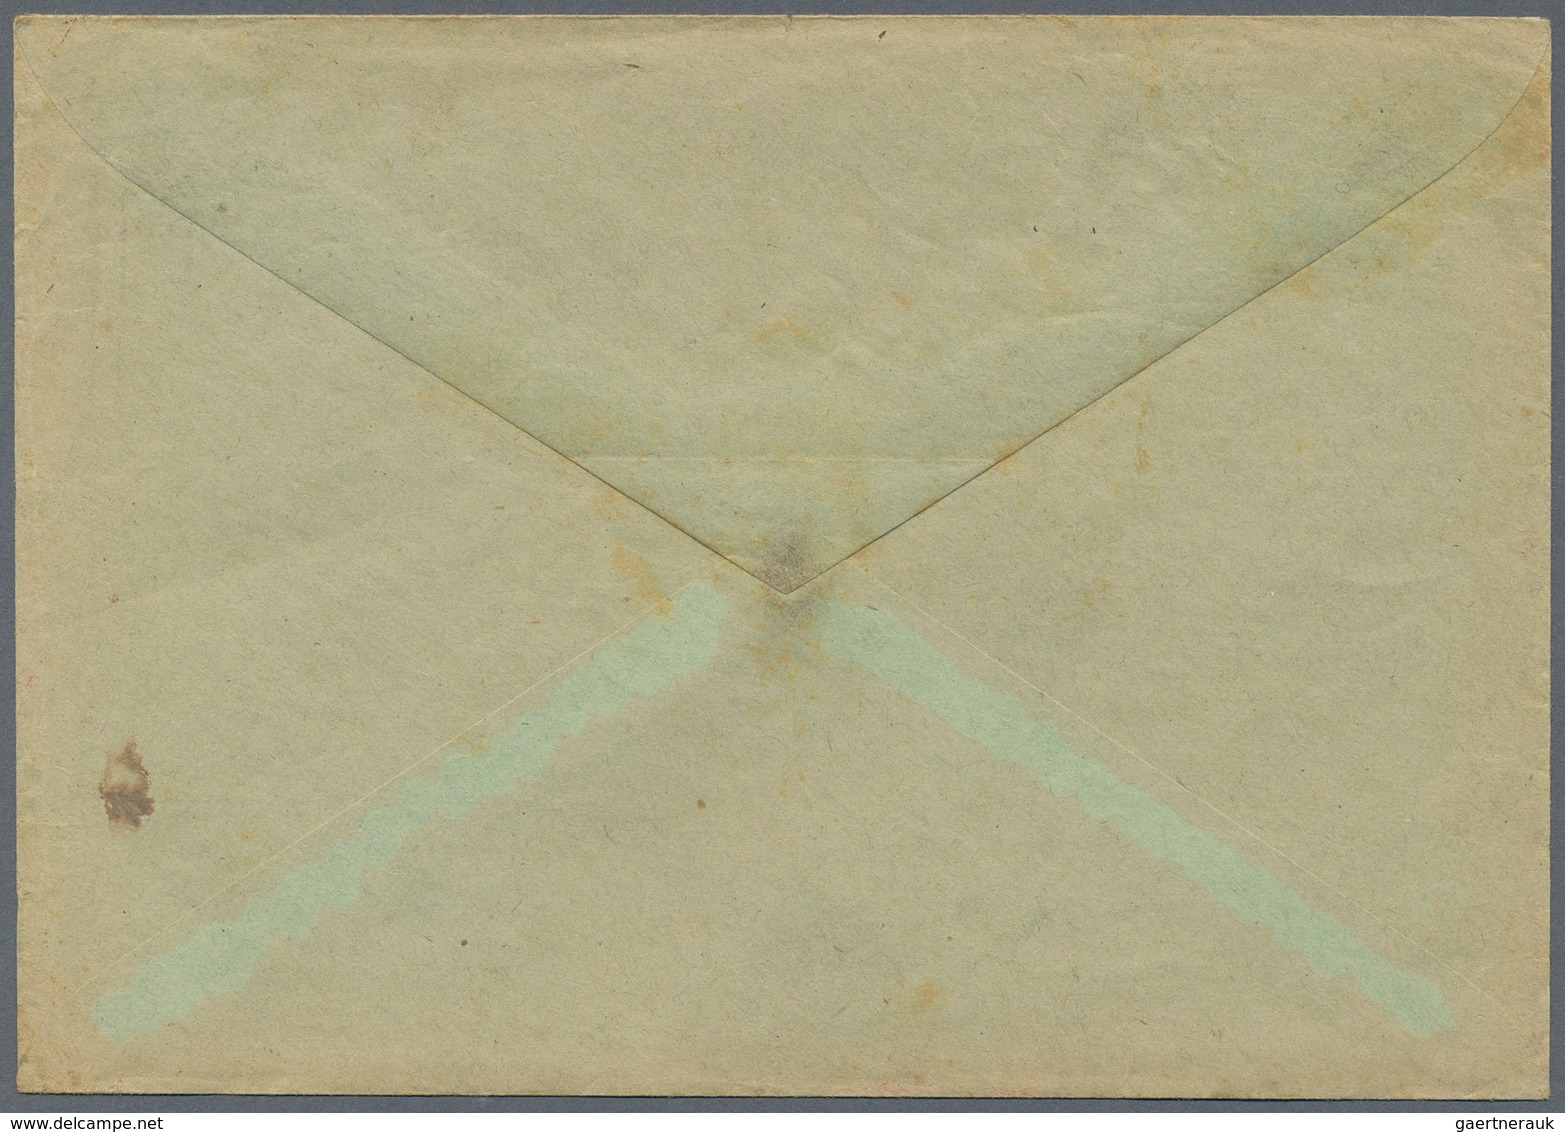 KZ-Post: KZ DACHAU: 1940, Vordruck-Briefumschlag Nach Myslowitz - Covers & Documents